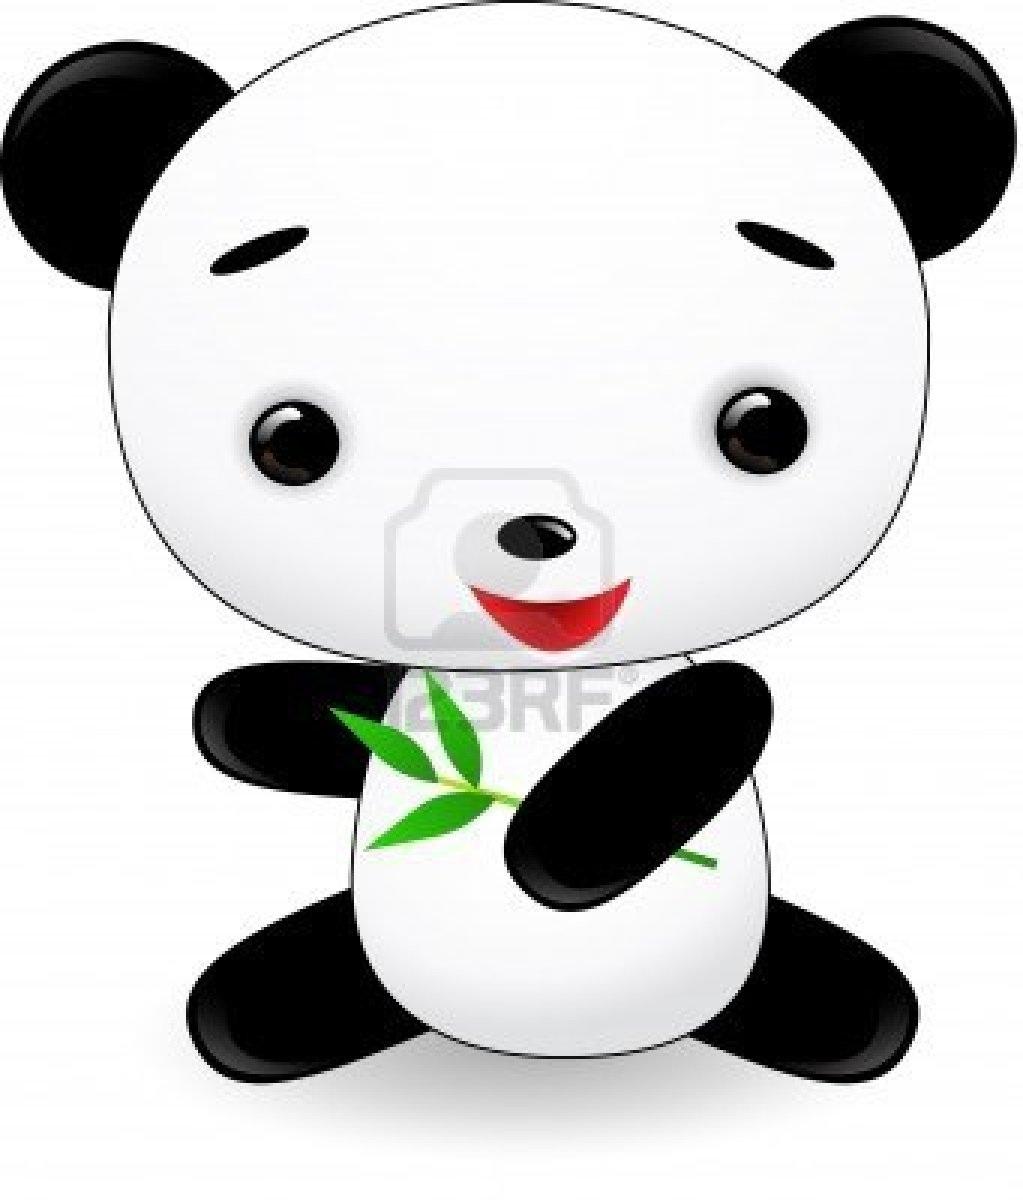 Cute Panda Pictures Anime - Cute Cartoon Panda Bears - 1023x1200 Wallpaper  